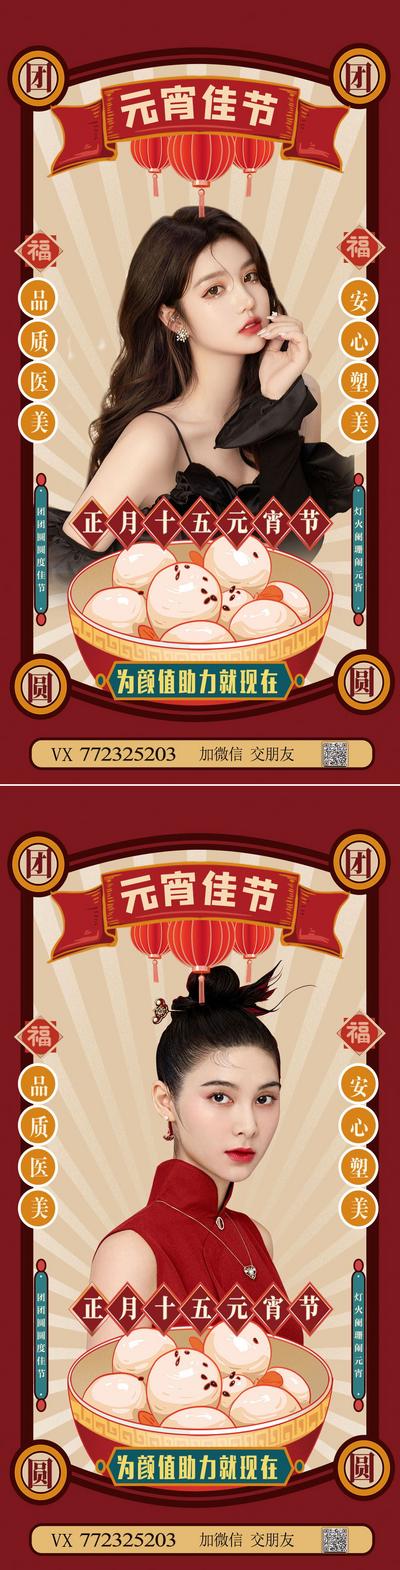 南门网 海报 中国传统节日 元宵节 医美 整形 人物 插画